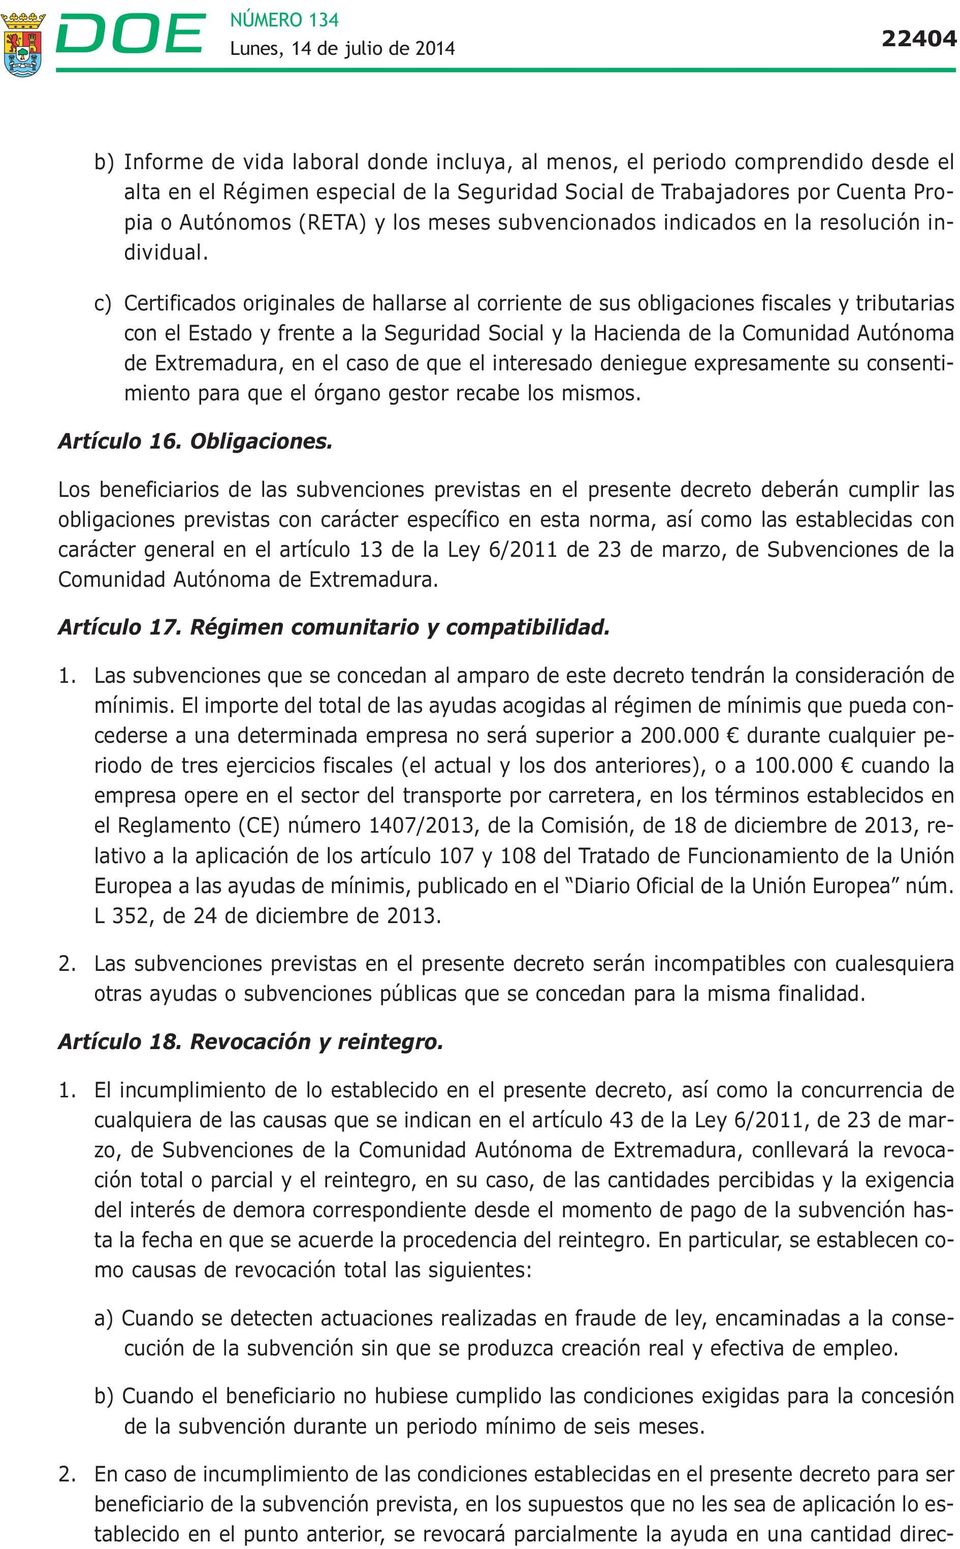 c) Certificados originales de hallarse al corriente de sus obligaciones fiscales y tributarias con el Estado y frente a la Seguridad Social y la Hacienda de la Comunidad Autónoma de Extremadura, en